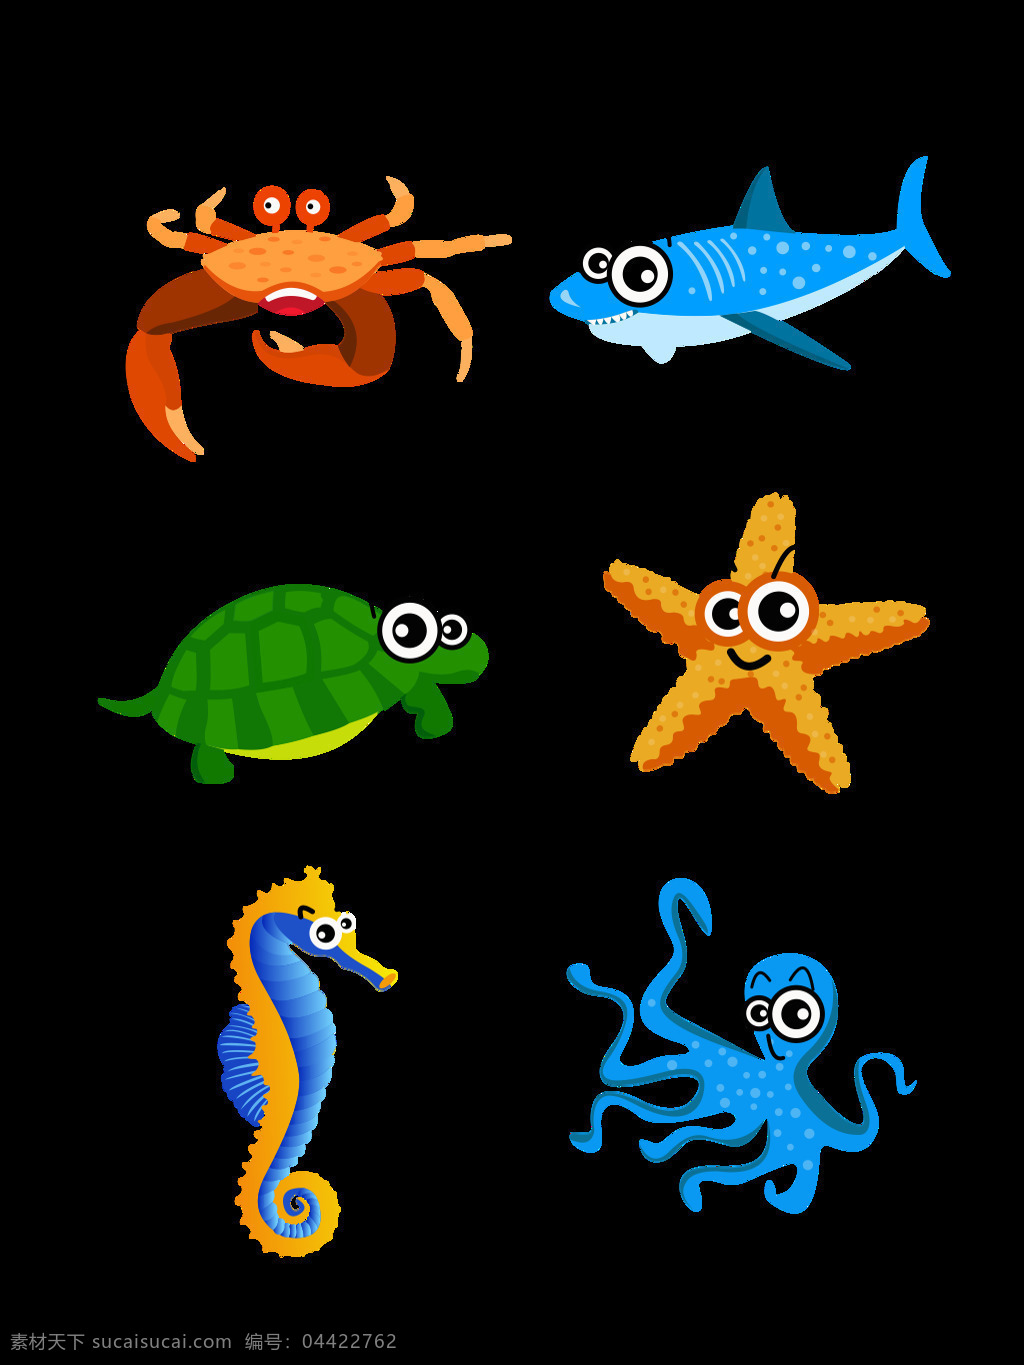 卡通 可爱 海底 动物 元素 套 图 商用 卡通可爱 海底世界 螃蟹 海星 元素设计 鲨鱼 乌龟 海马 章鱼